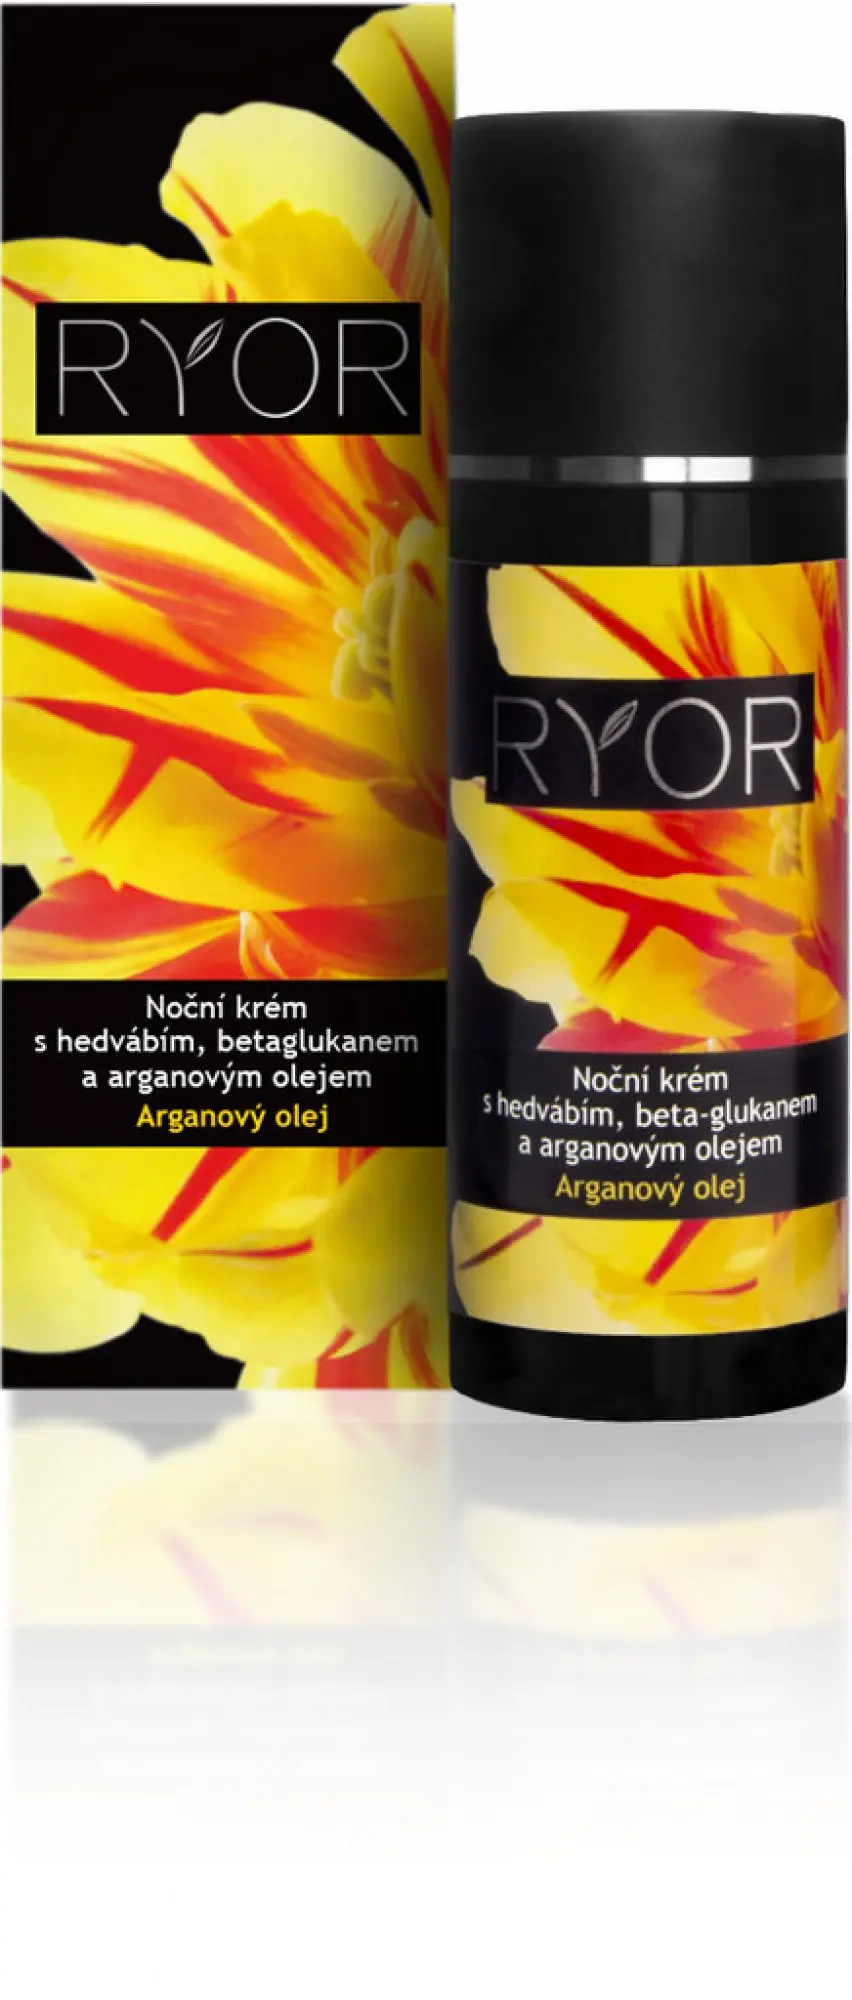 Ryor Argan noční krém s hedvábím beta-glukanem a arganovým olejem 50 ml